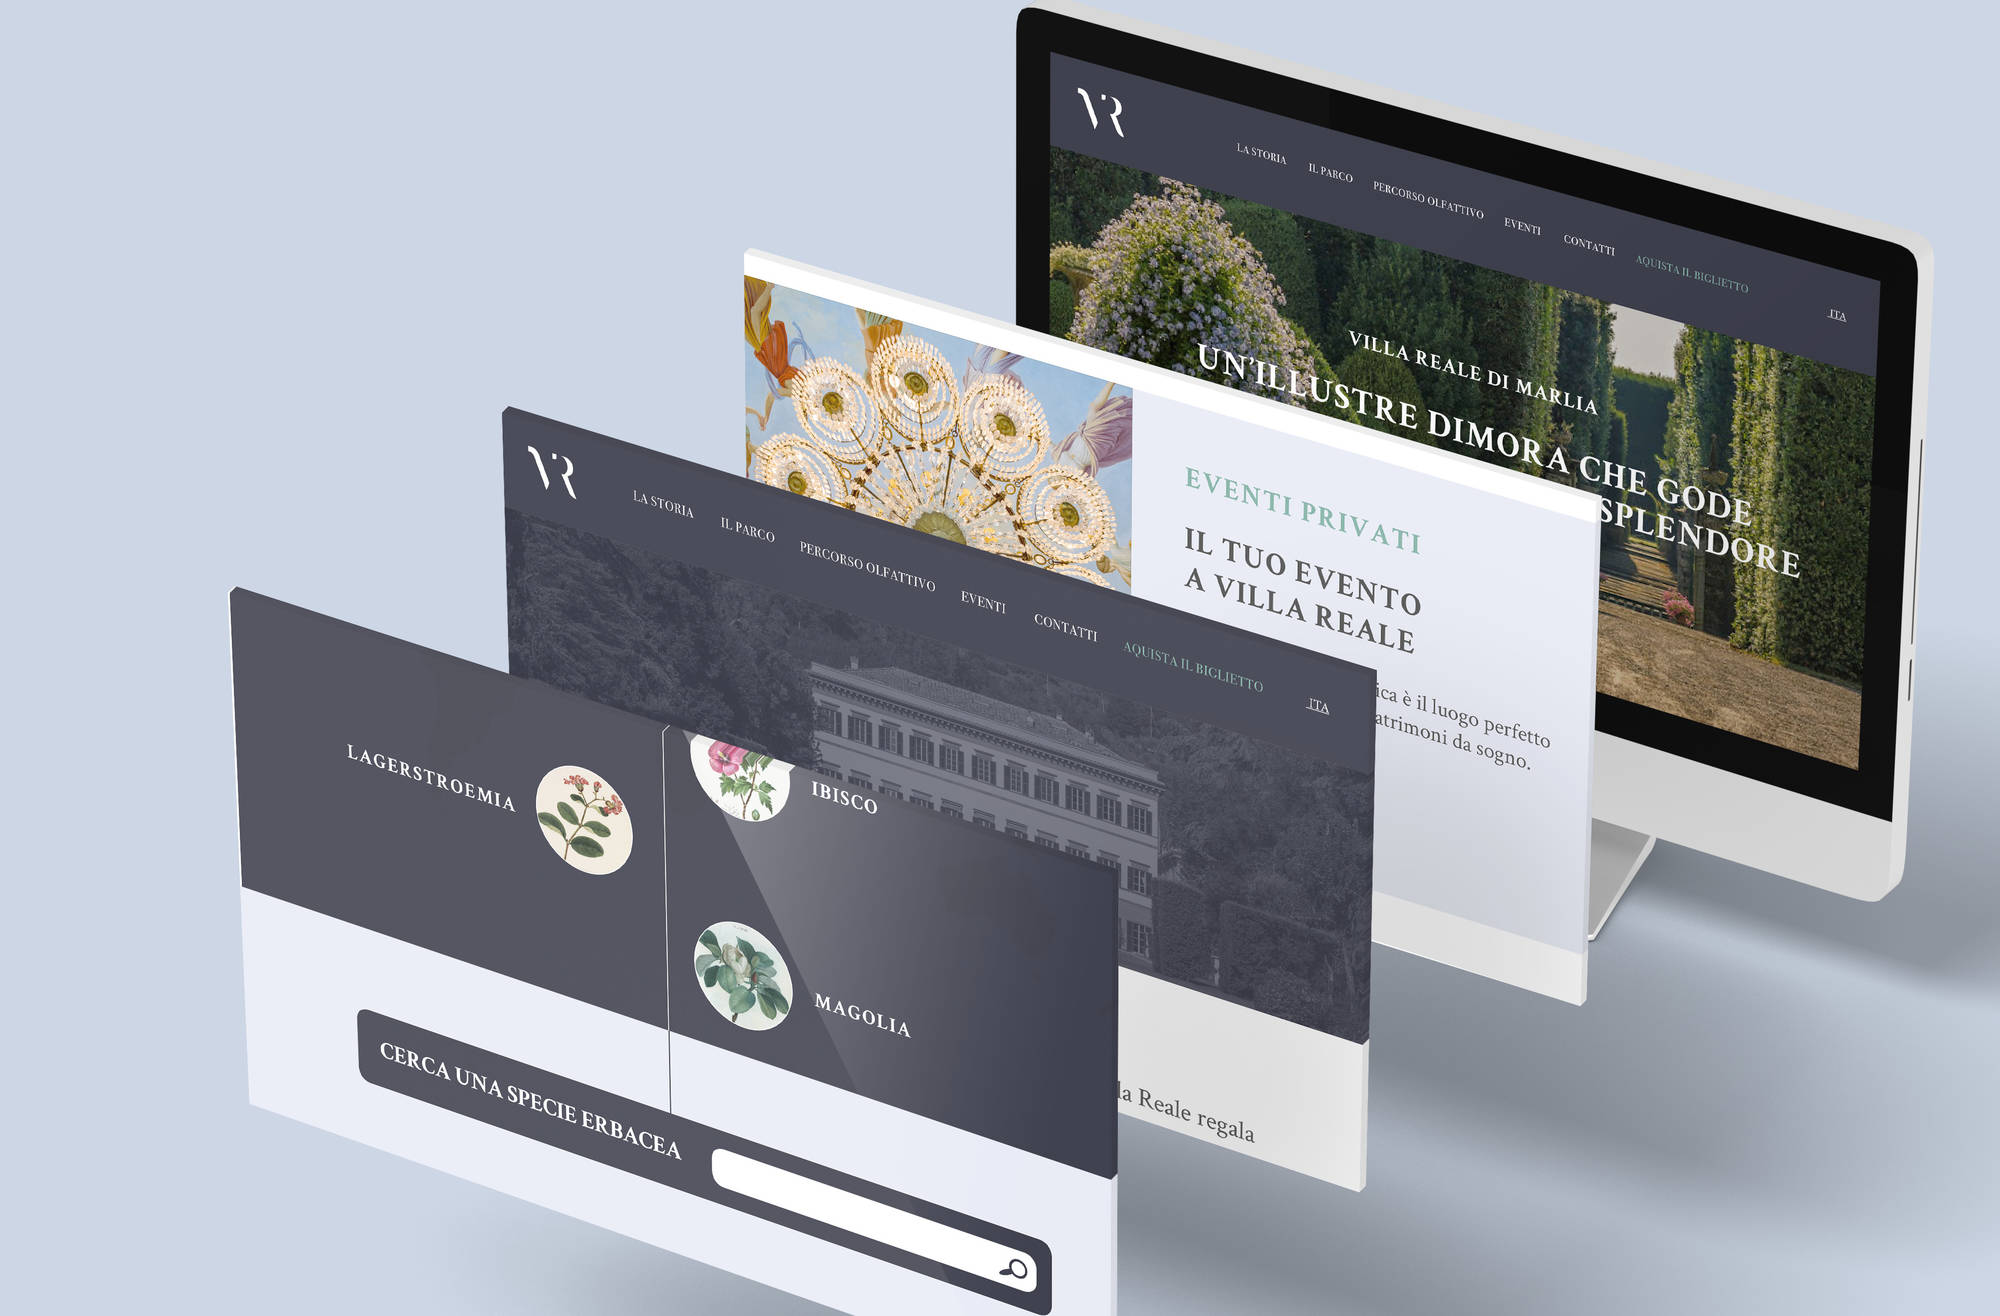 Mockup schermate sito web del progetto "Villa Reale di Marlia"